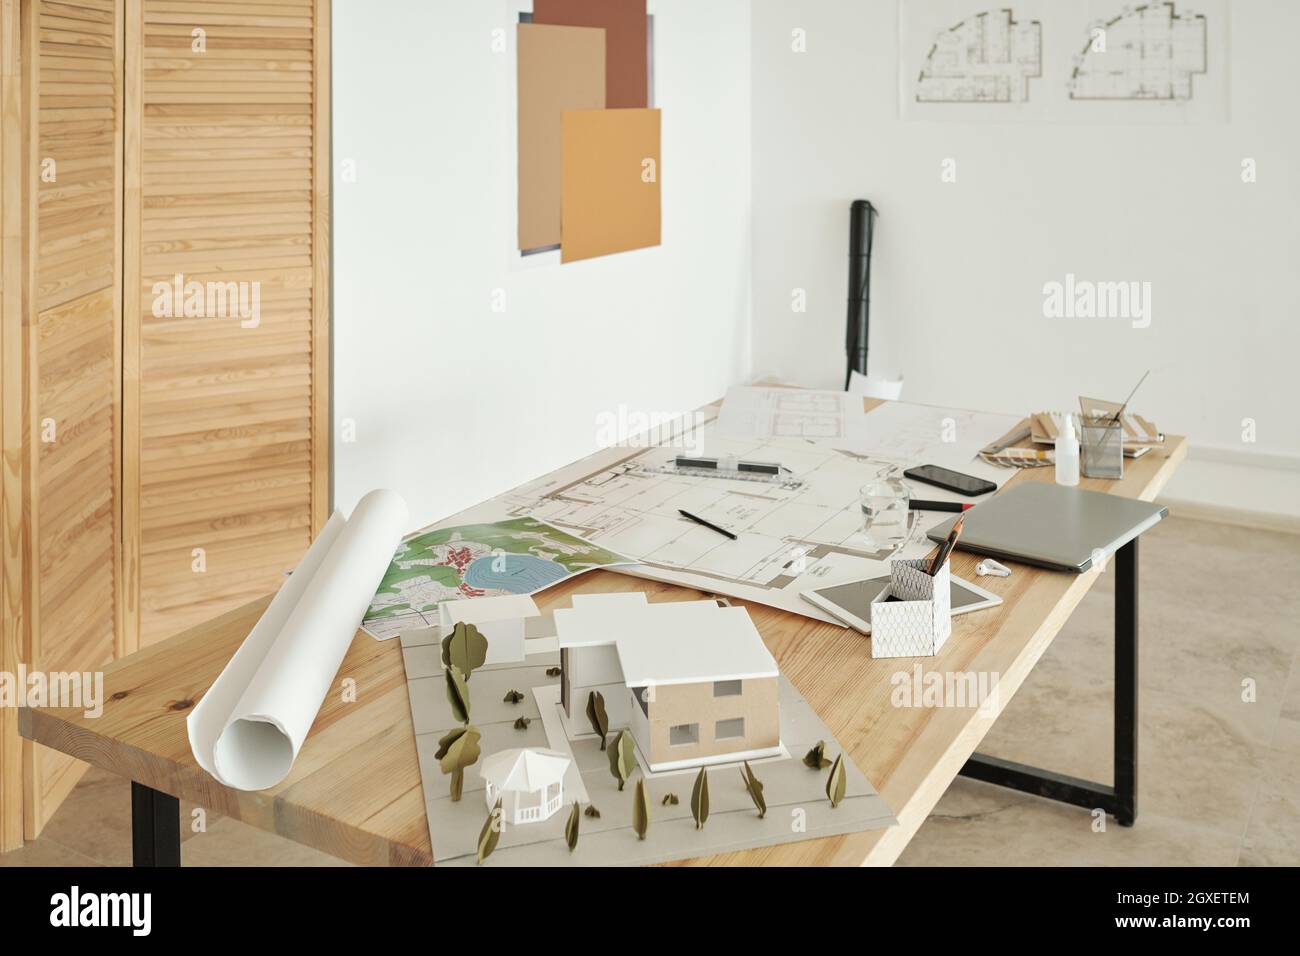 Holztisch mit Papierhausmodellen, Skizzen von Neubauten und mobilen Gadgets Stockfoto